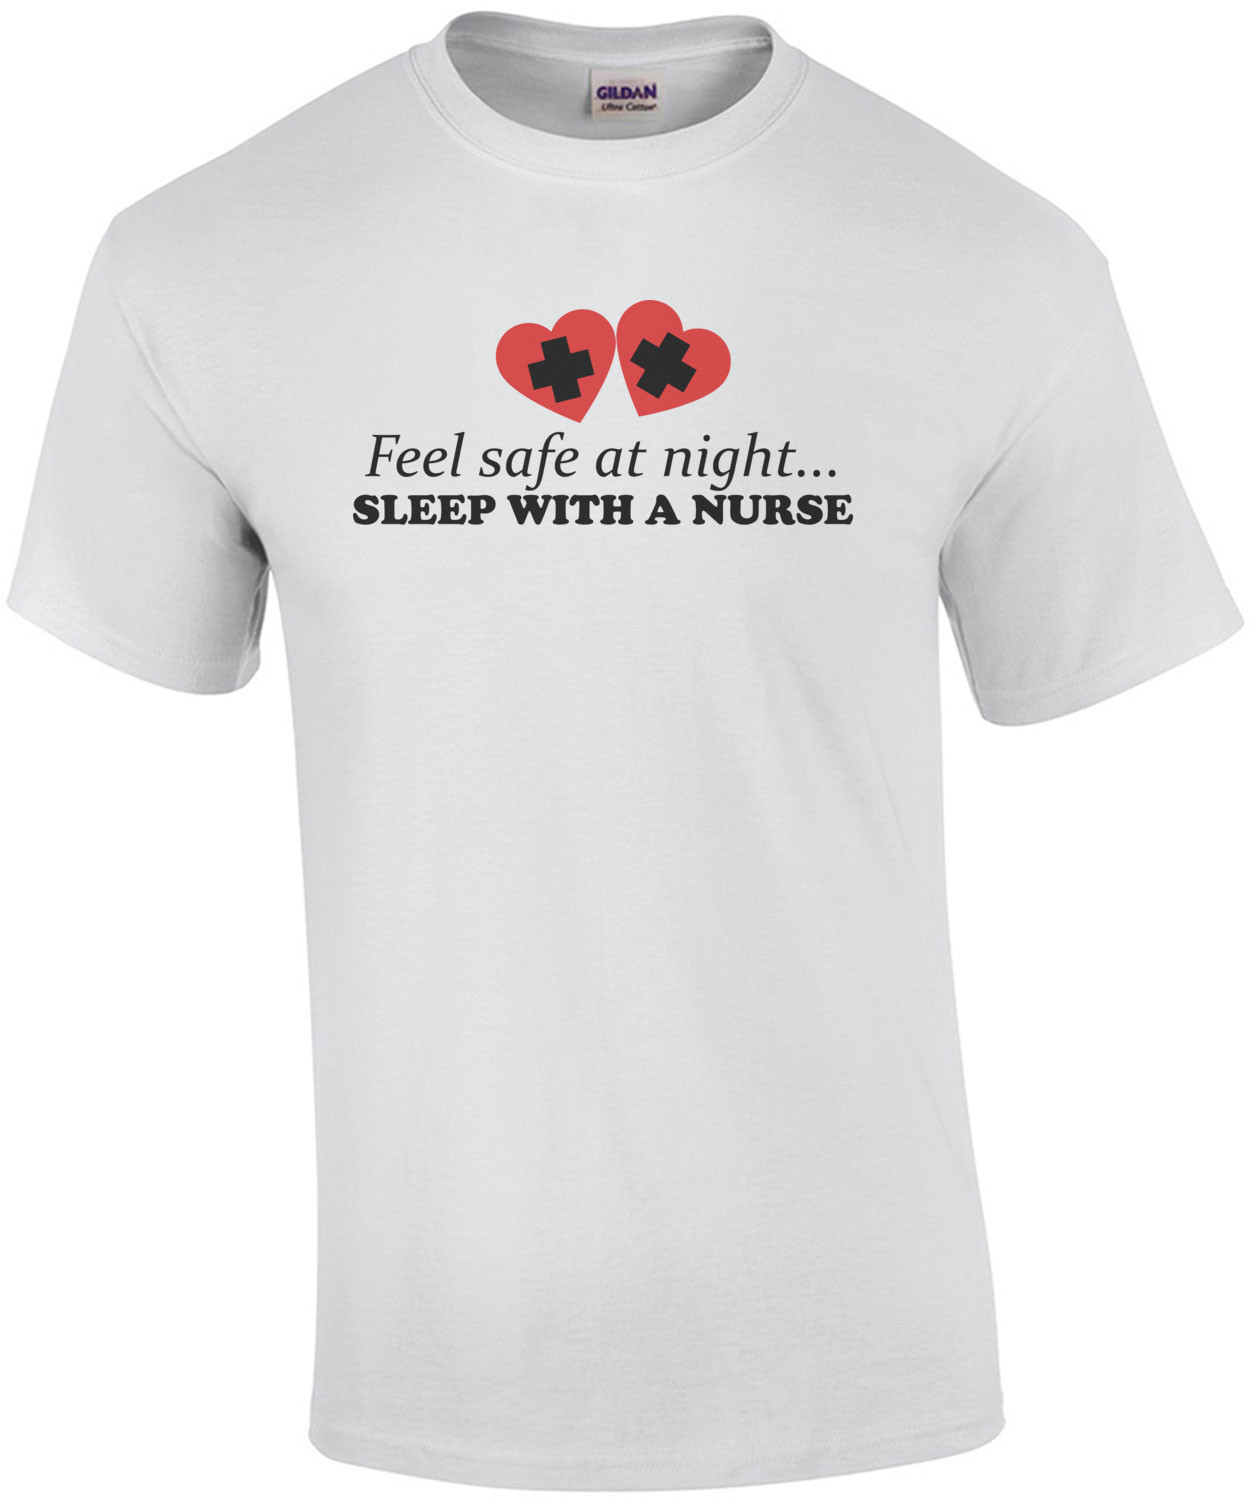 Feel safe at night... sleep with a nurse